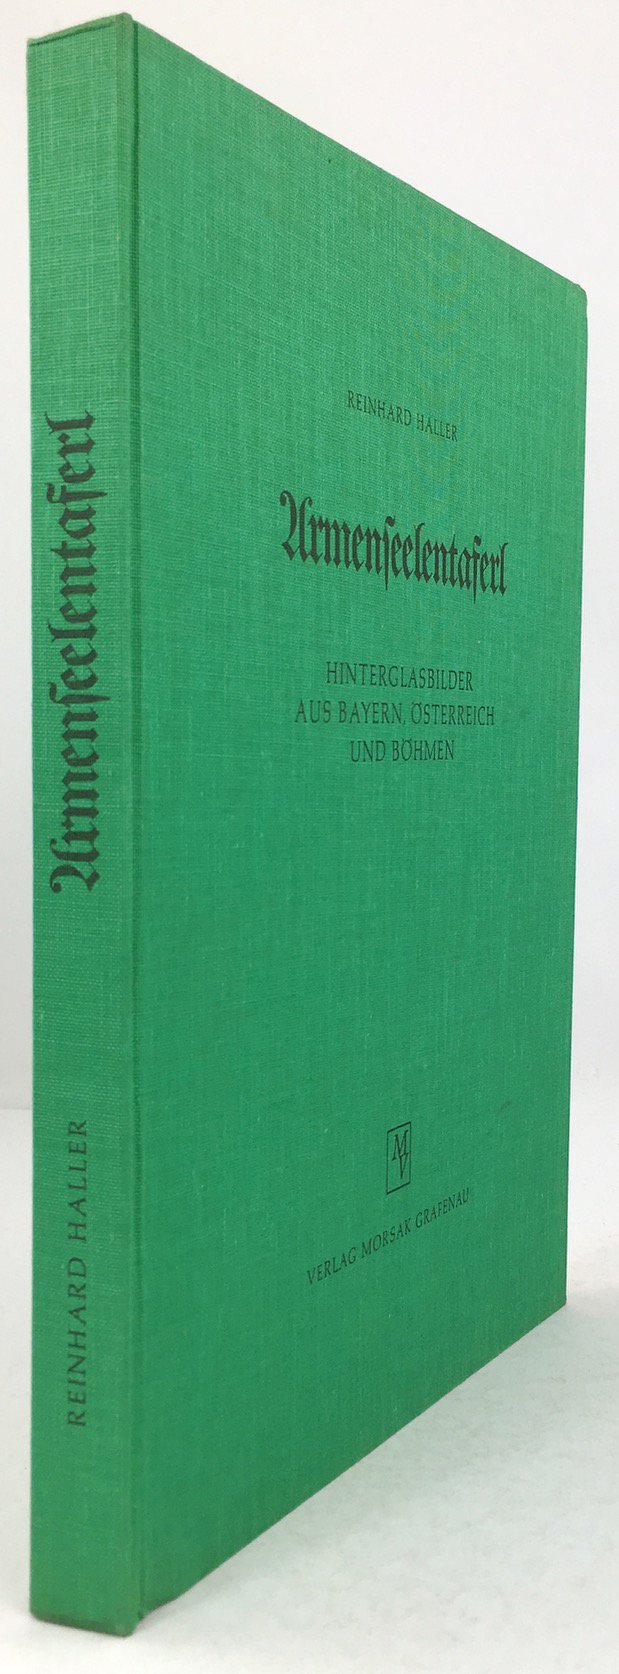 Abbildung von "Armenseelentaferl. Hinterglasbilder aus Bayern, Österreich und Böhmen."